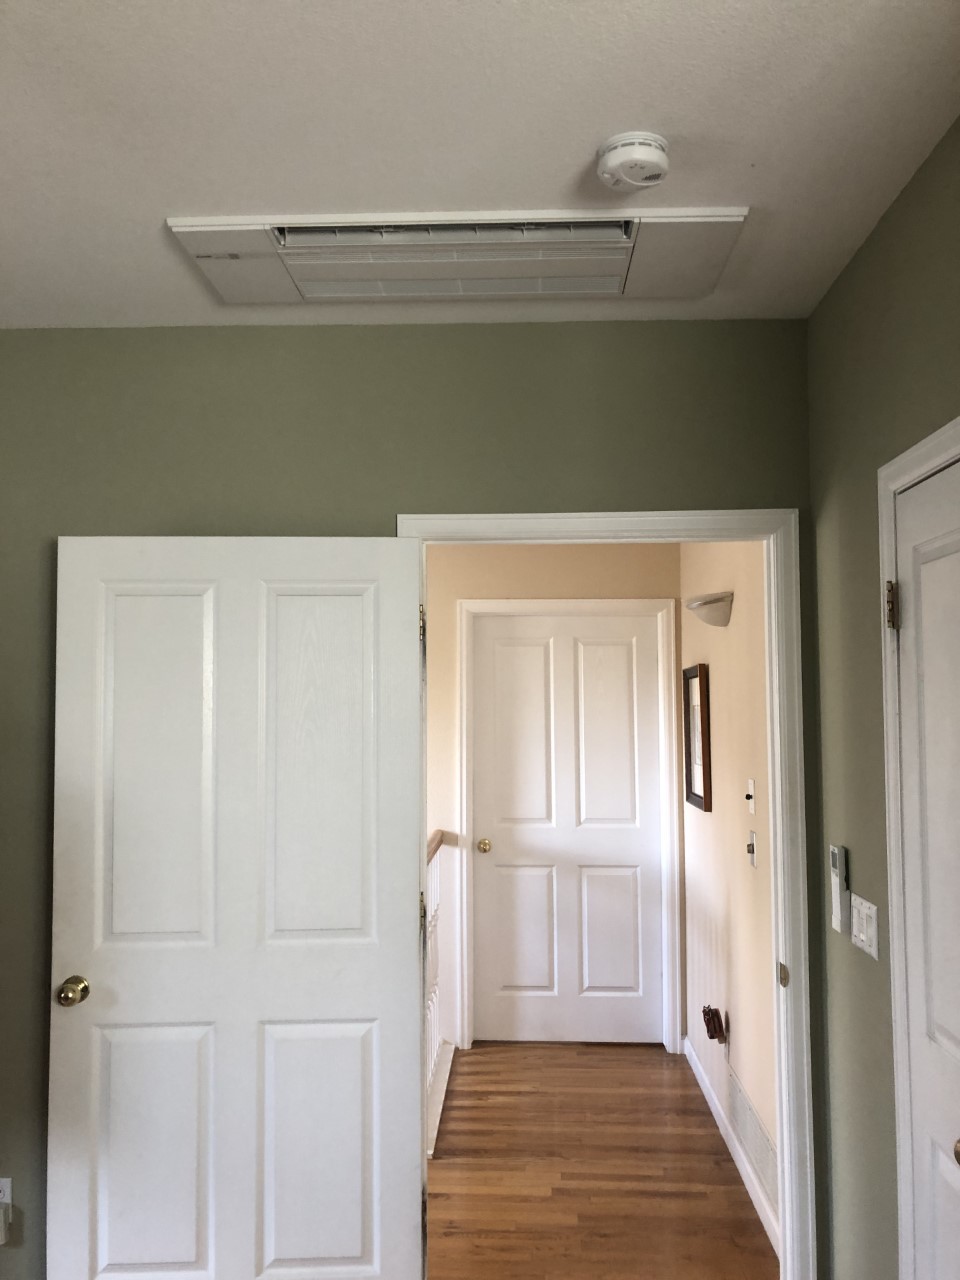 Mitsu install-indoor ceiling cassette, hallway-Miller job-from BA